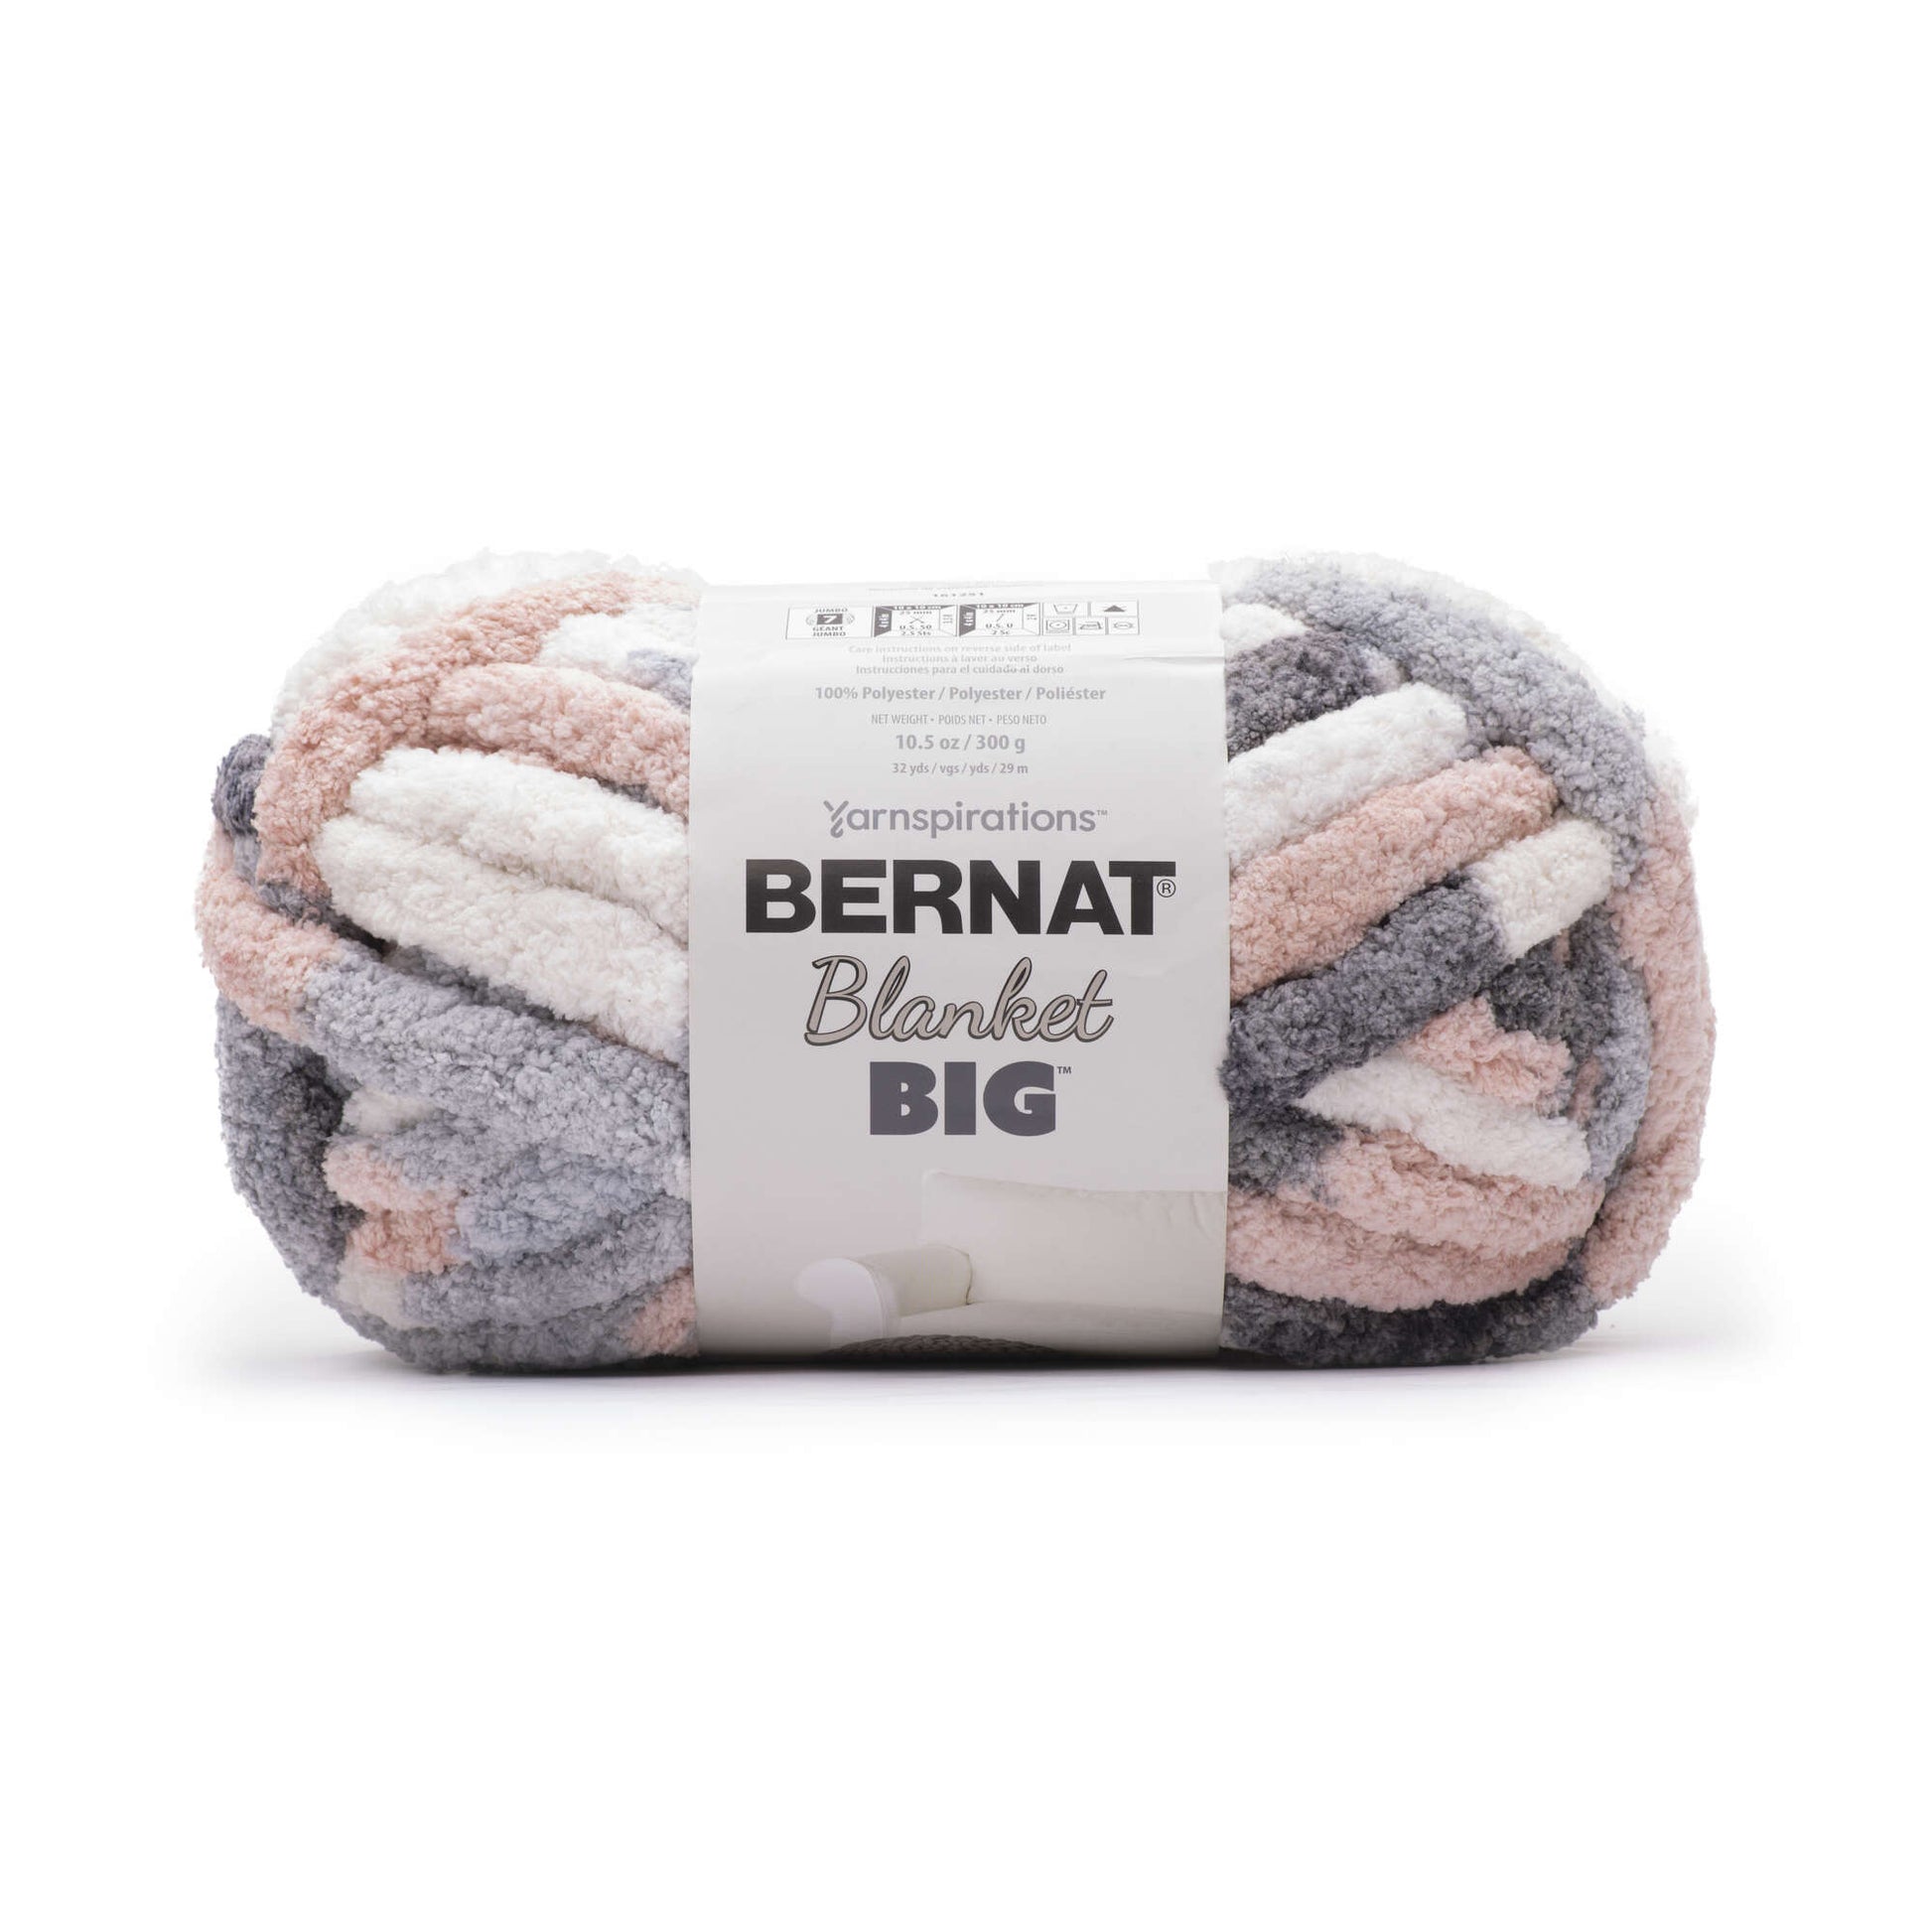 Bernat Blanket Big Yarn (300g/10.5oz) Silver Lining Varg